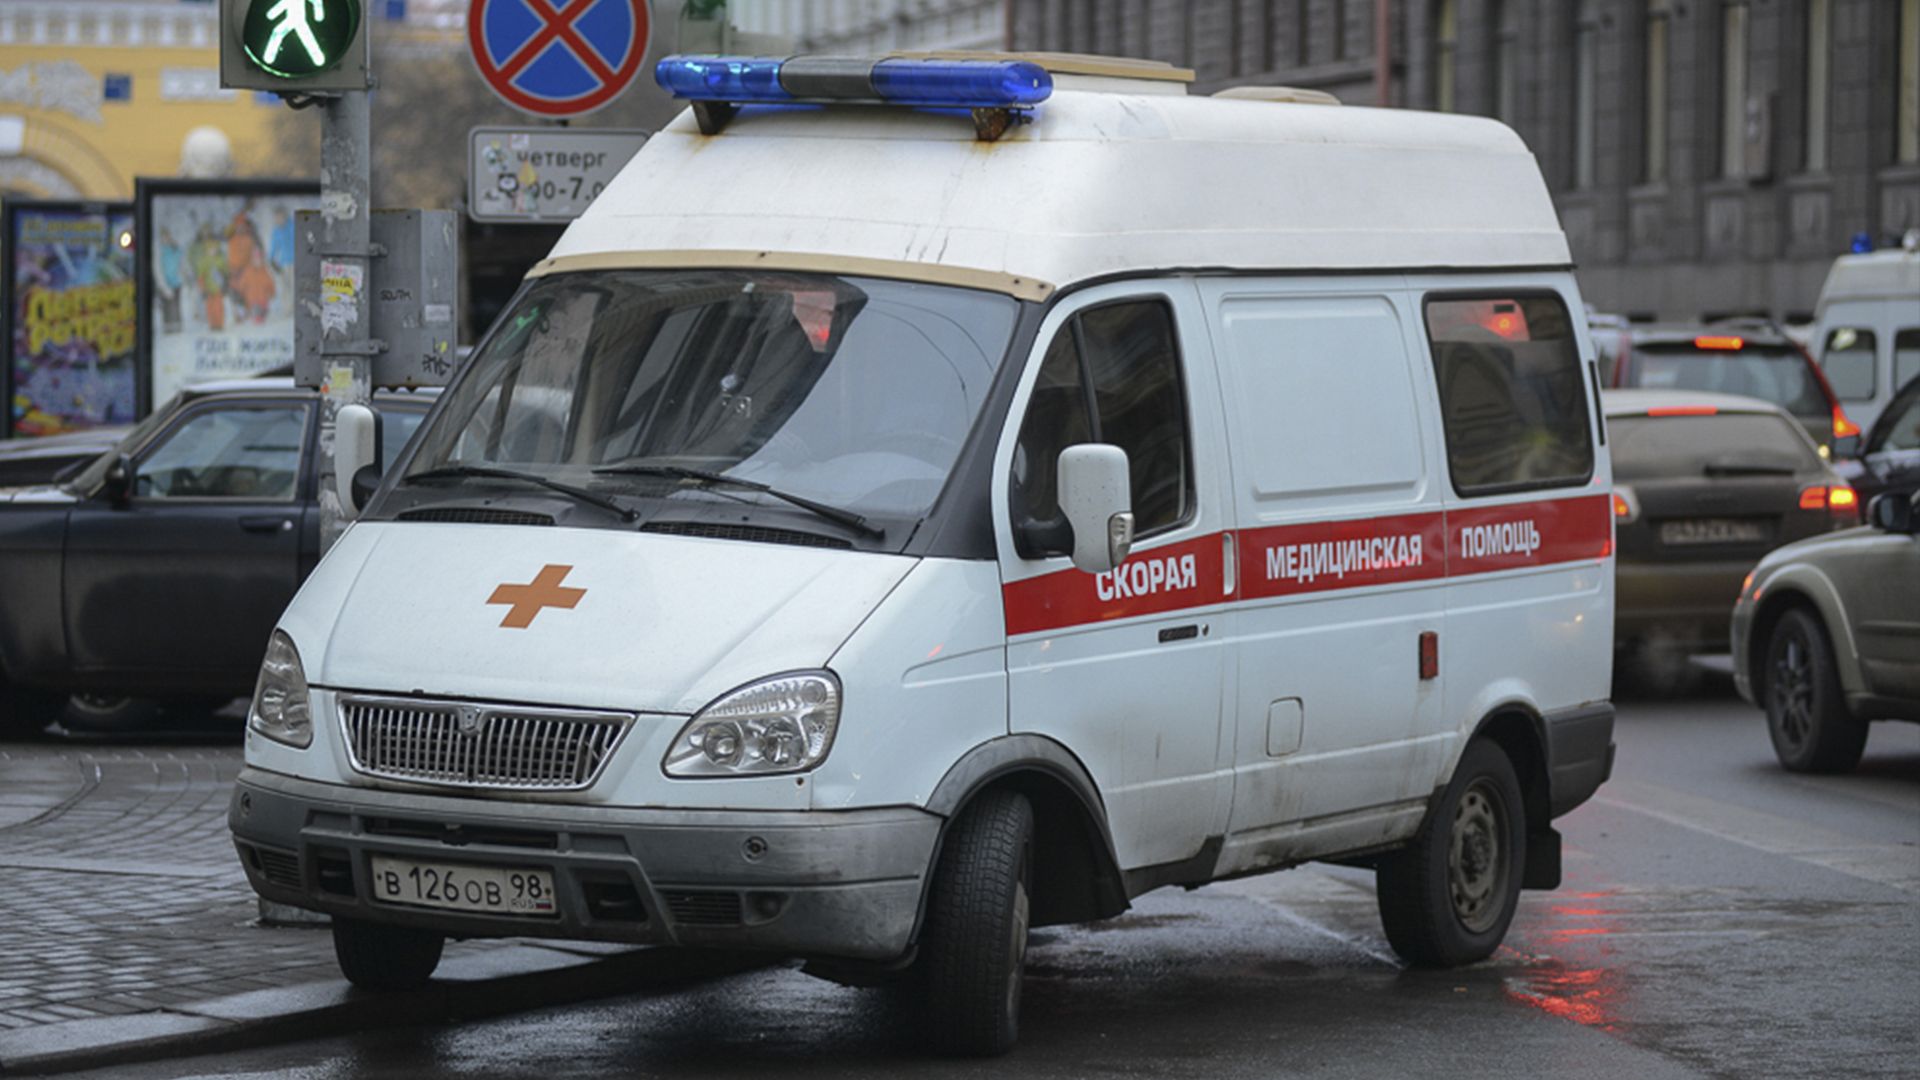 Мальчик задохнулся насмерть угарным газом в дедушкином туалете в Севастополе